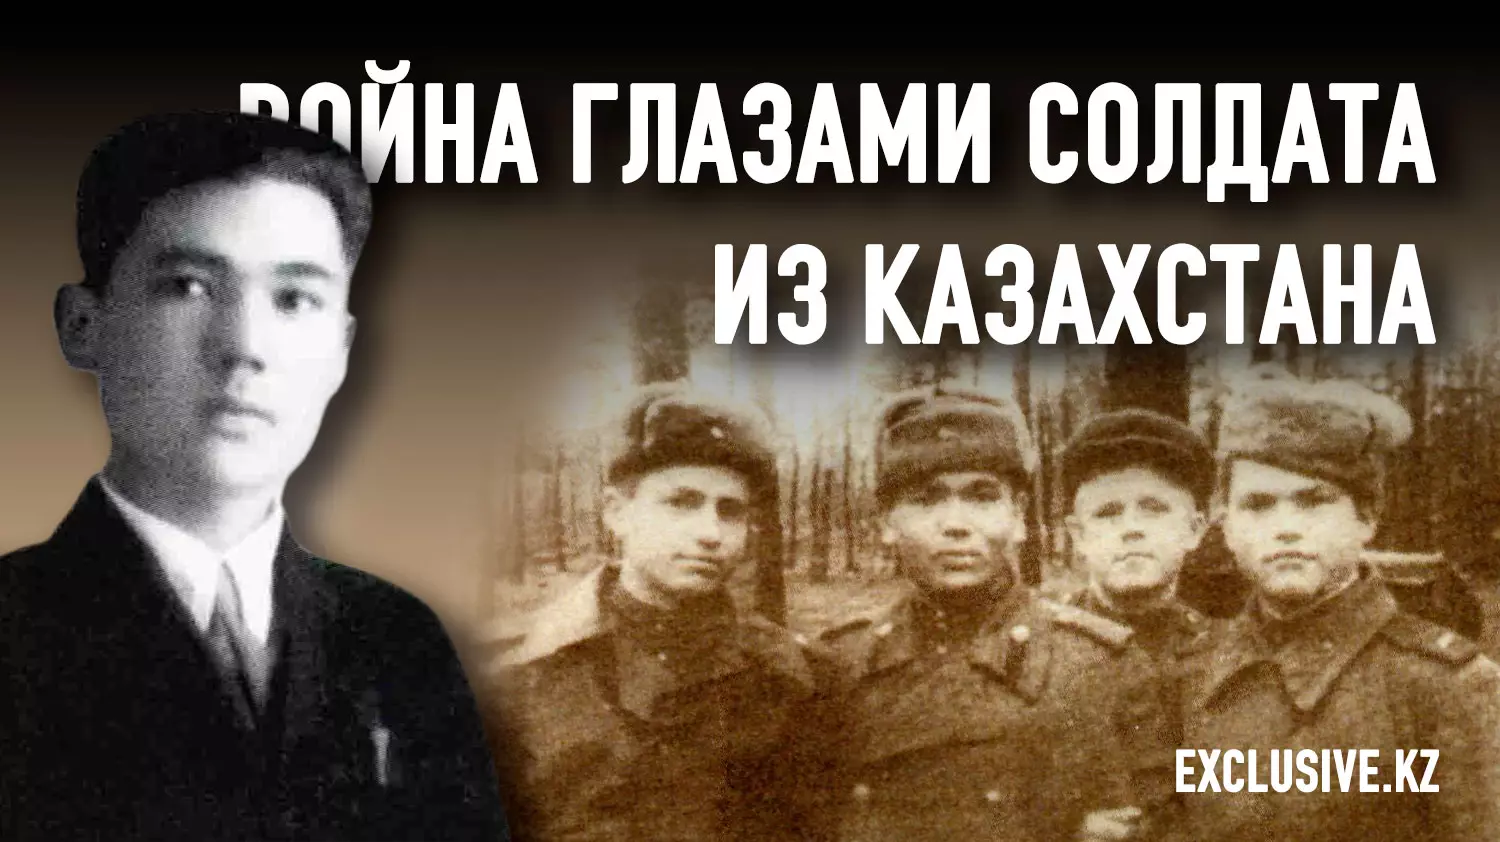 О чем мечтал отец Касым-Жомарта Токаева?